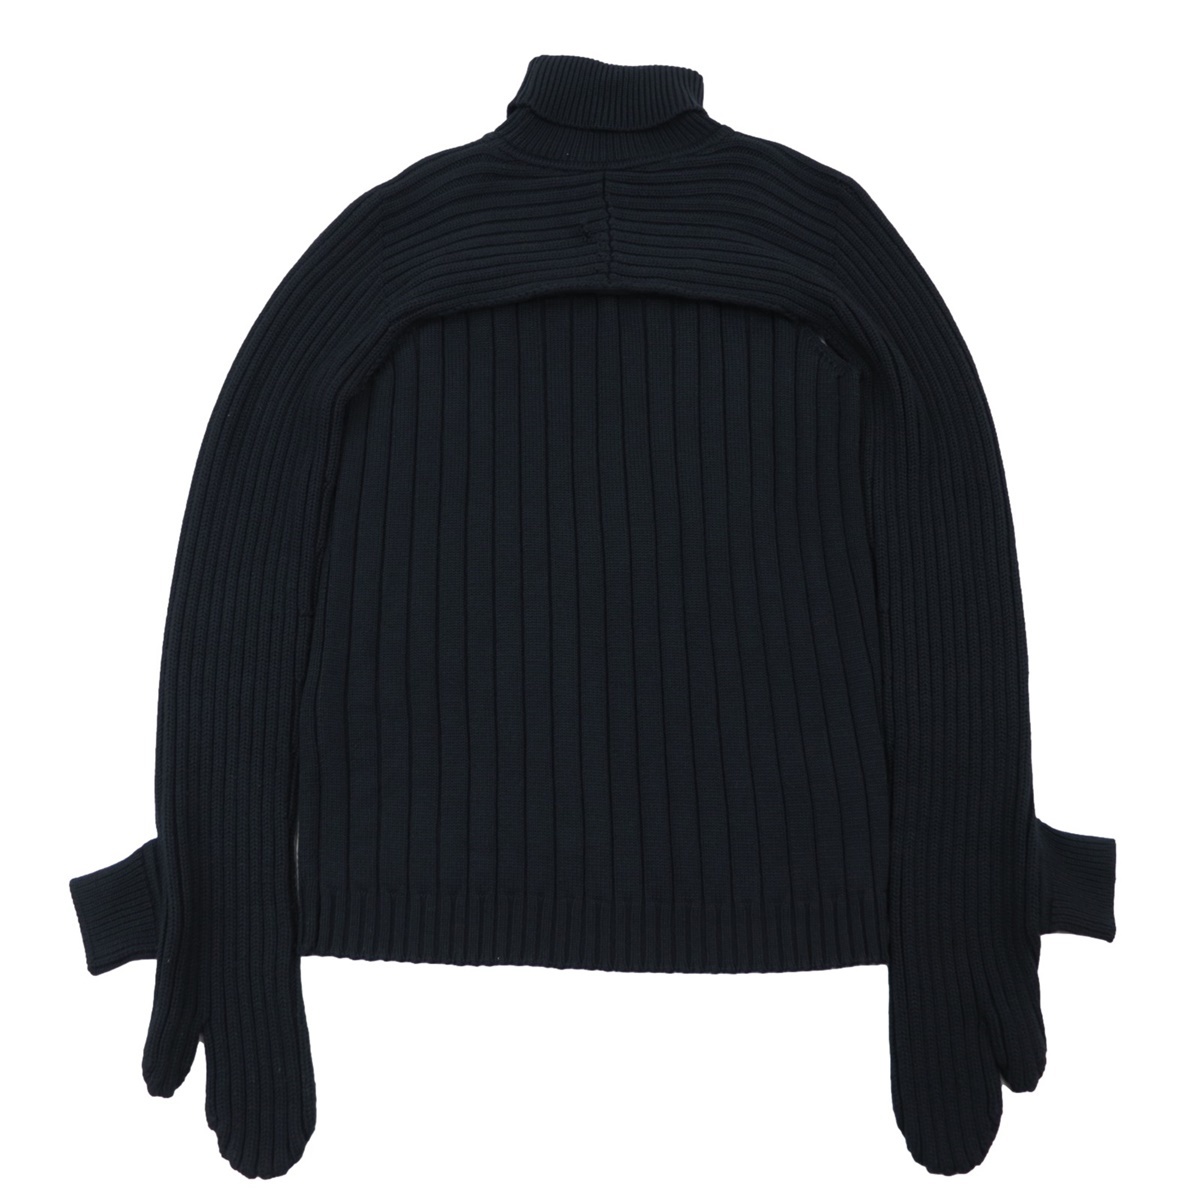  прекрасный товар Fendi ребра вязаный с высоким воротником свитер мужской чёрный 48 дизайн вязаный FENDI